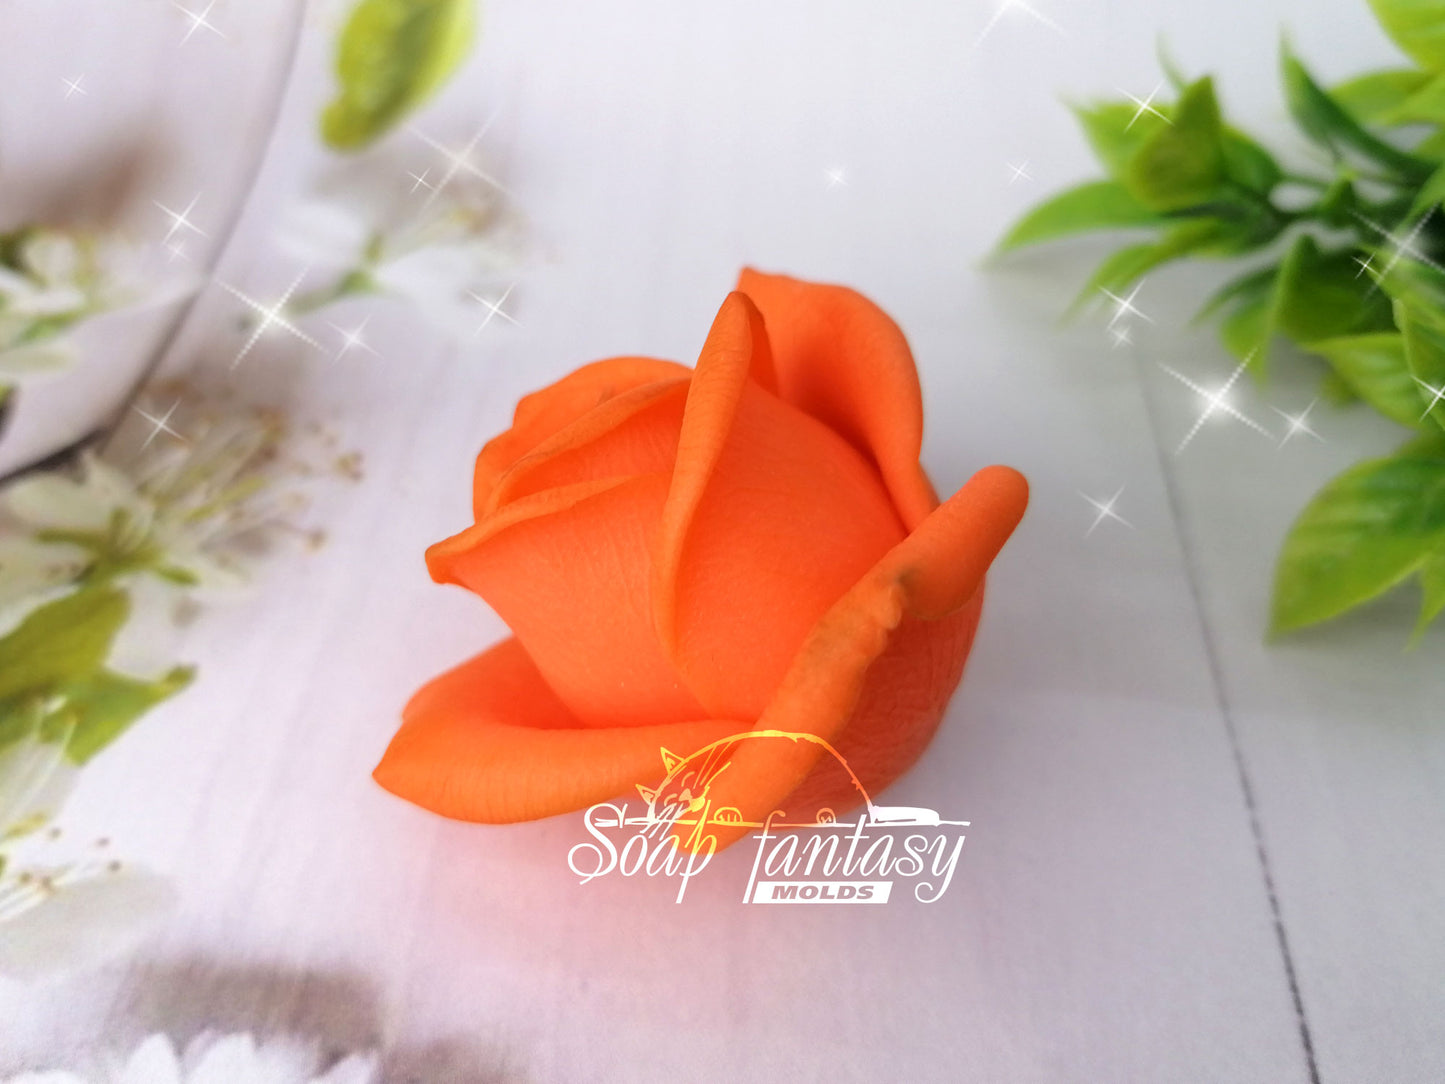 Rosebud "Orange juice" silicone mold for soap making